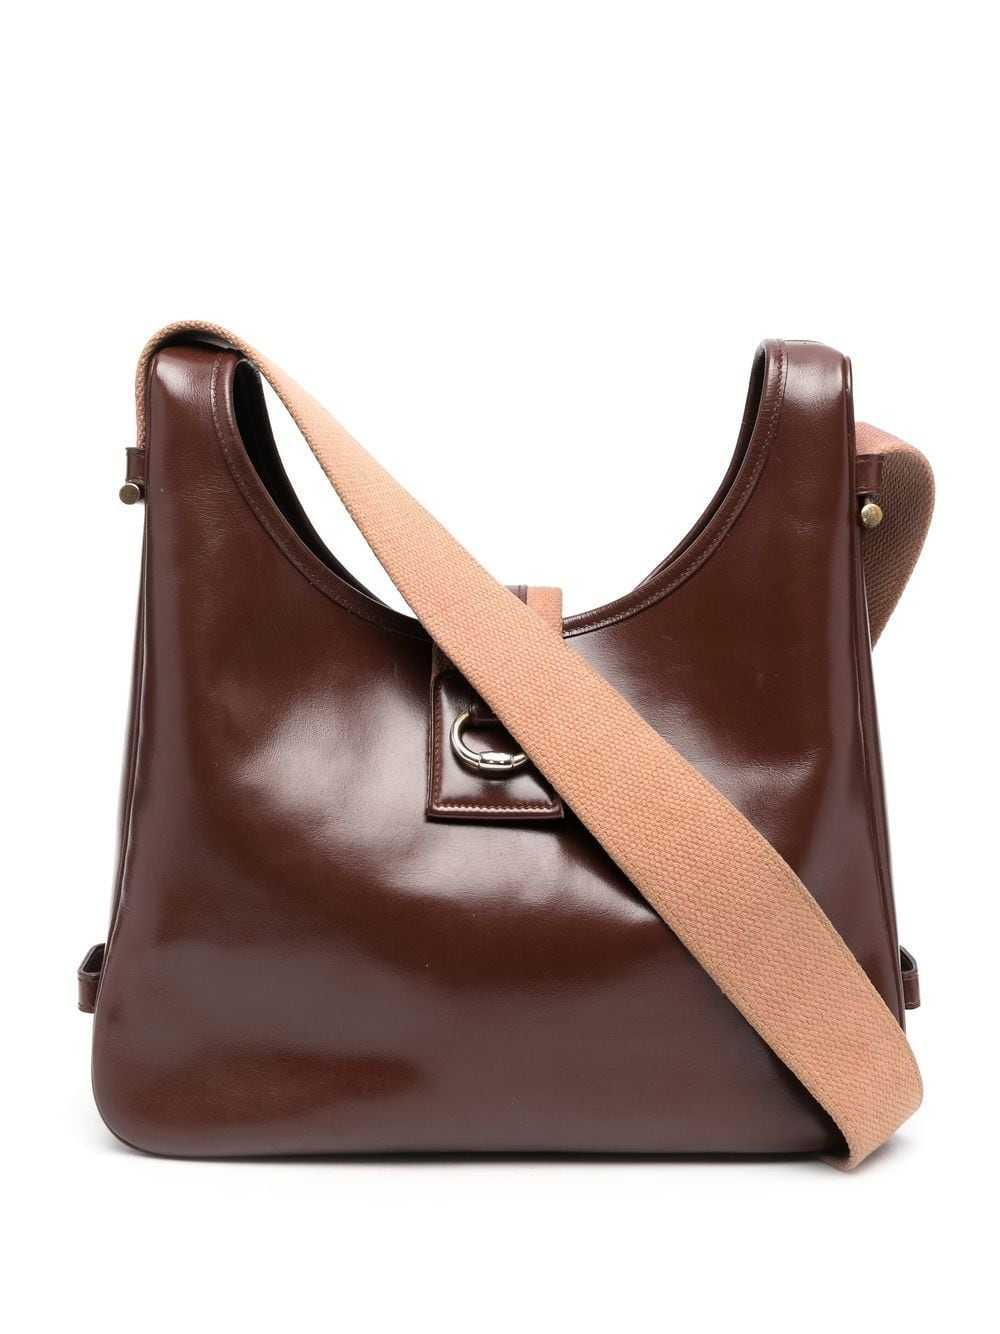 Hermès Pre-Owned 1981 tote bag - Brown - image 1